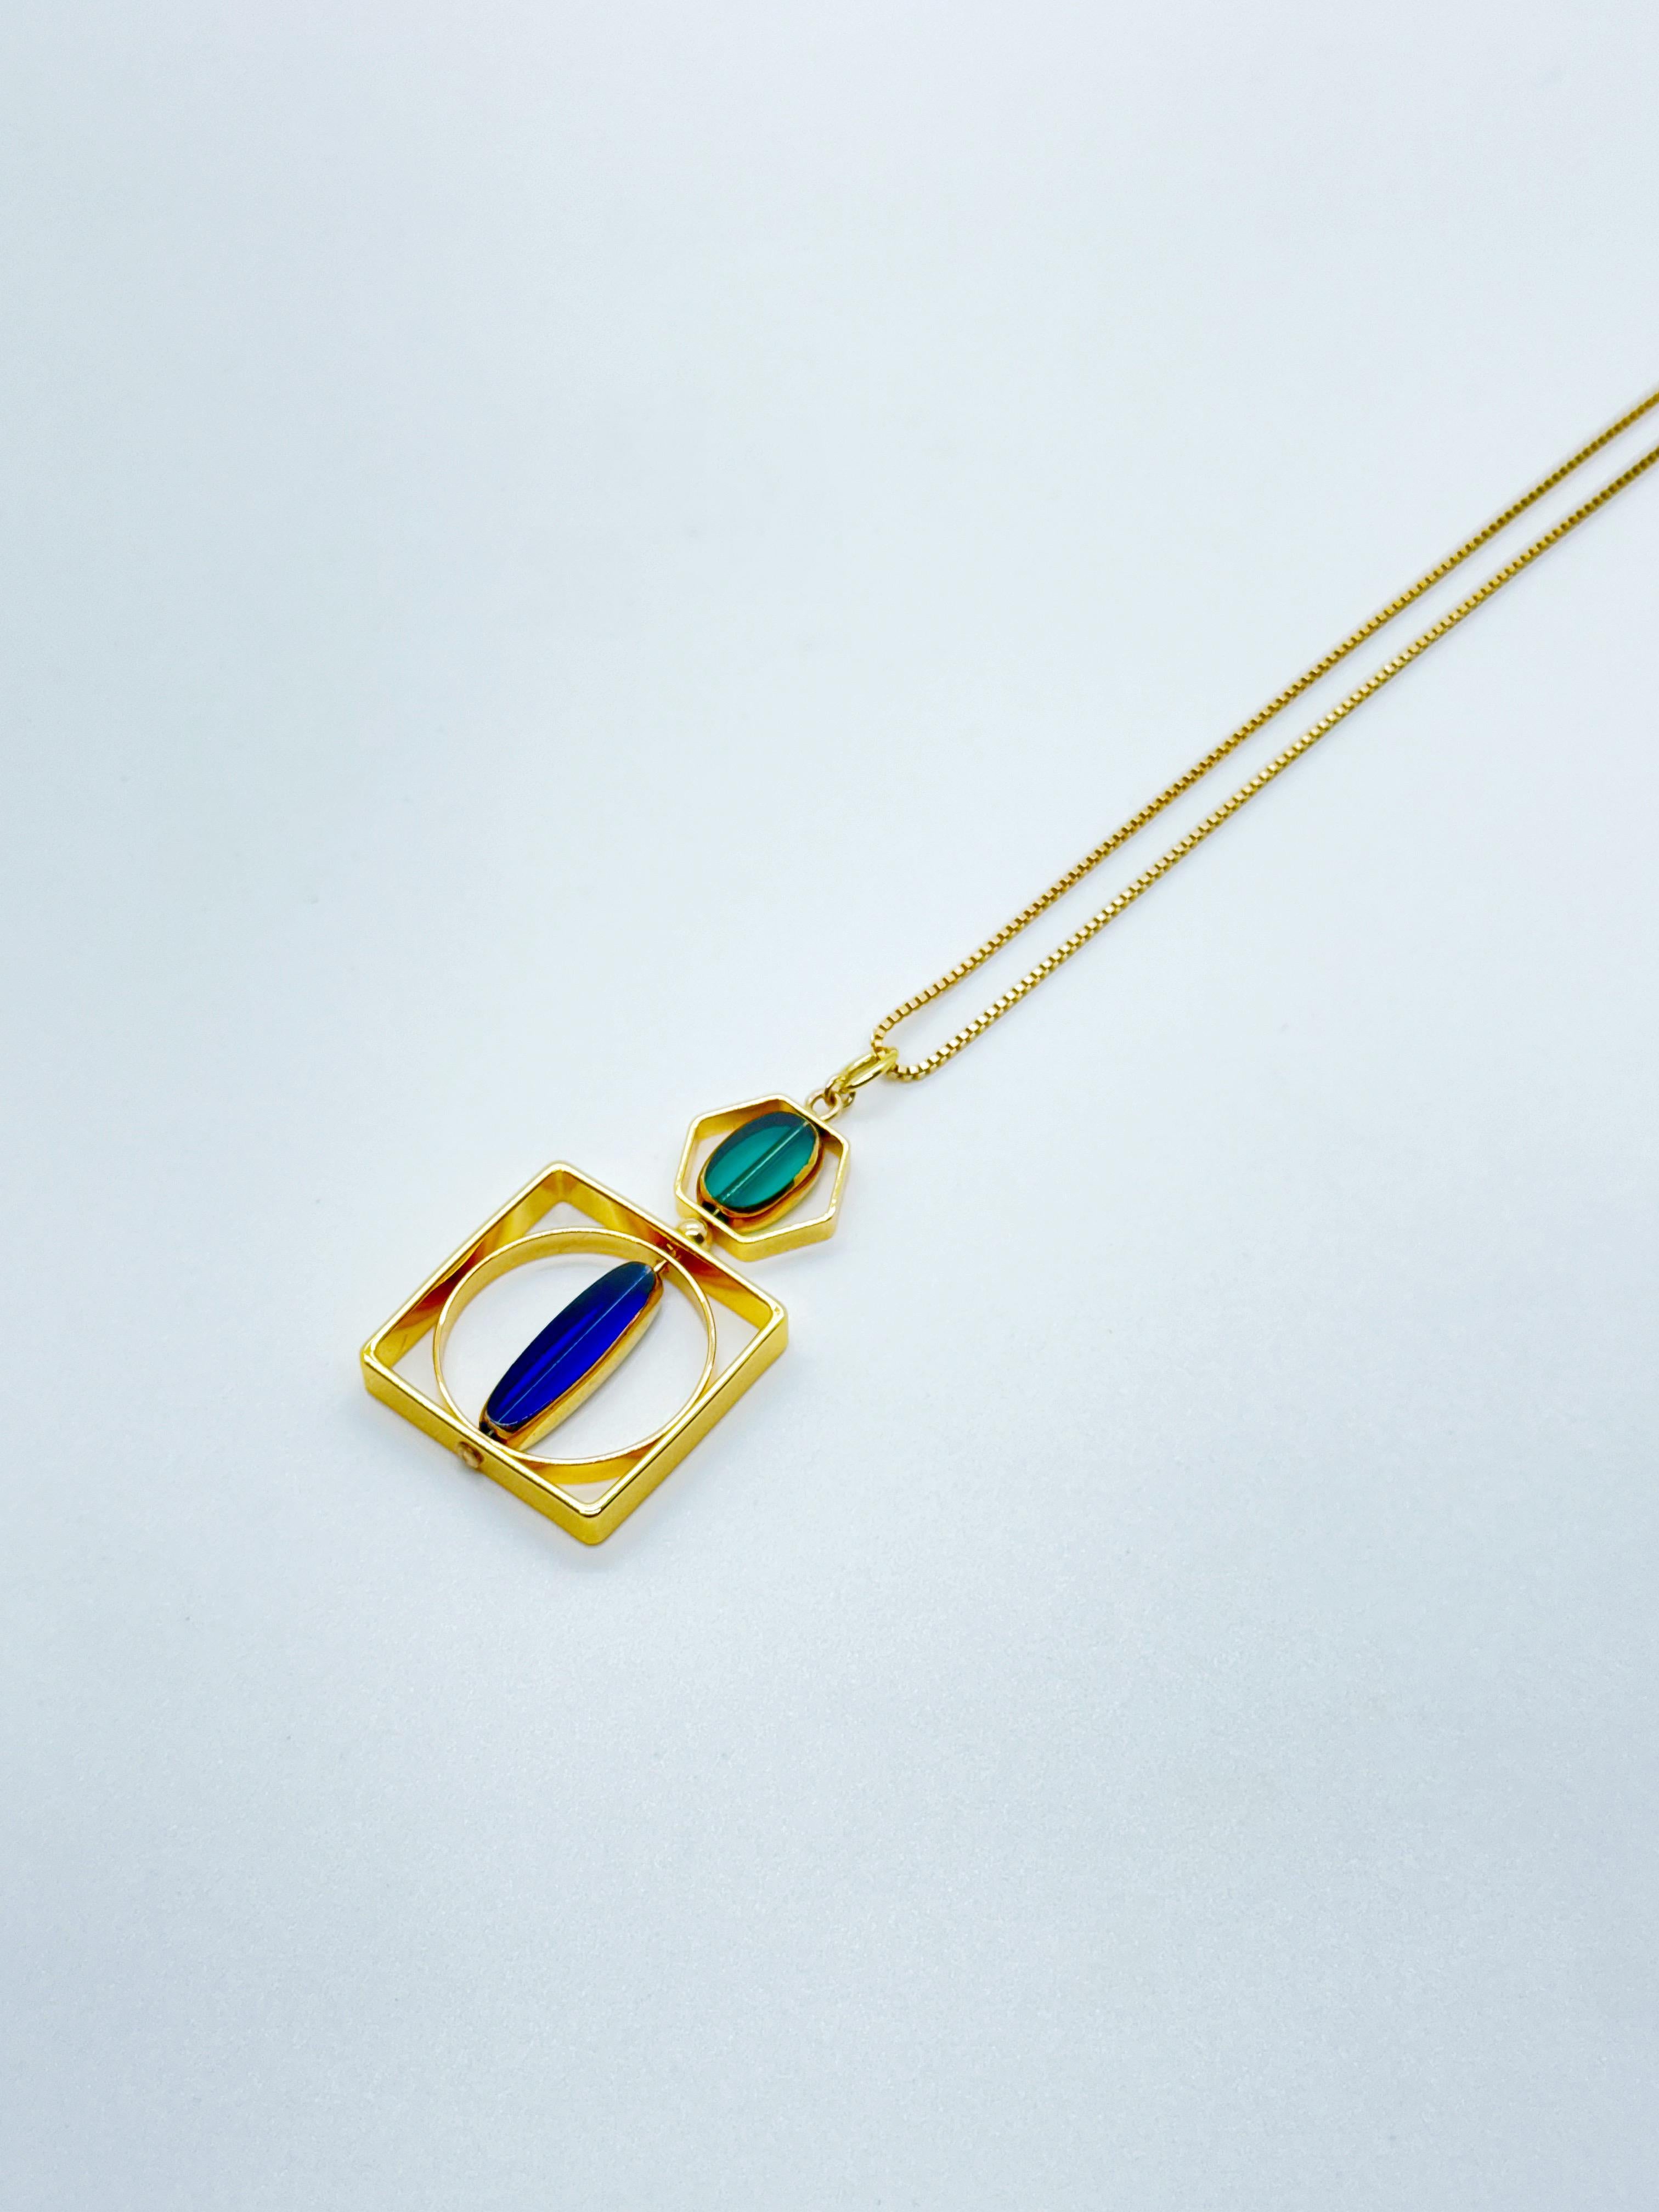 Le pendentif est composé de perles de verre allemandes vintage translucides bleues et vertes et se termine par une chaîne de 20 pouces en or. 

Les perles sont de nouvelles perles de verre allemandes vintage qui sont encadrées avec de l'or 24K. Les